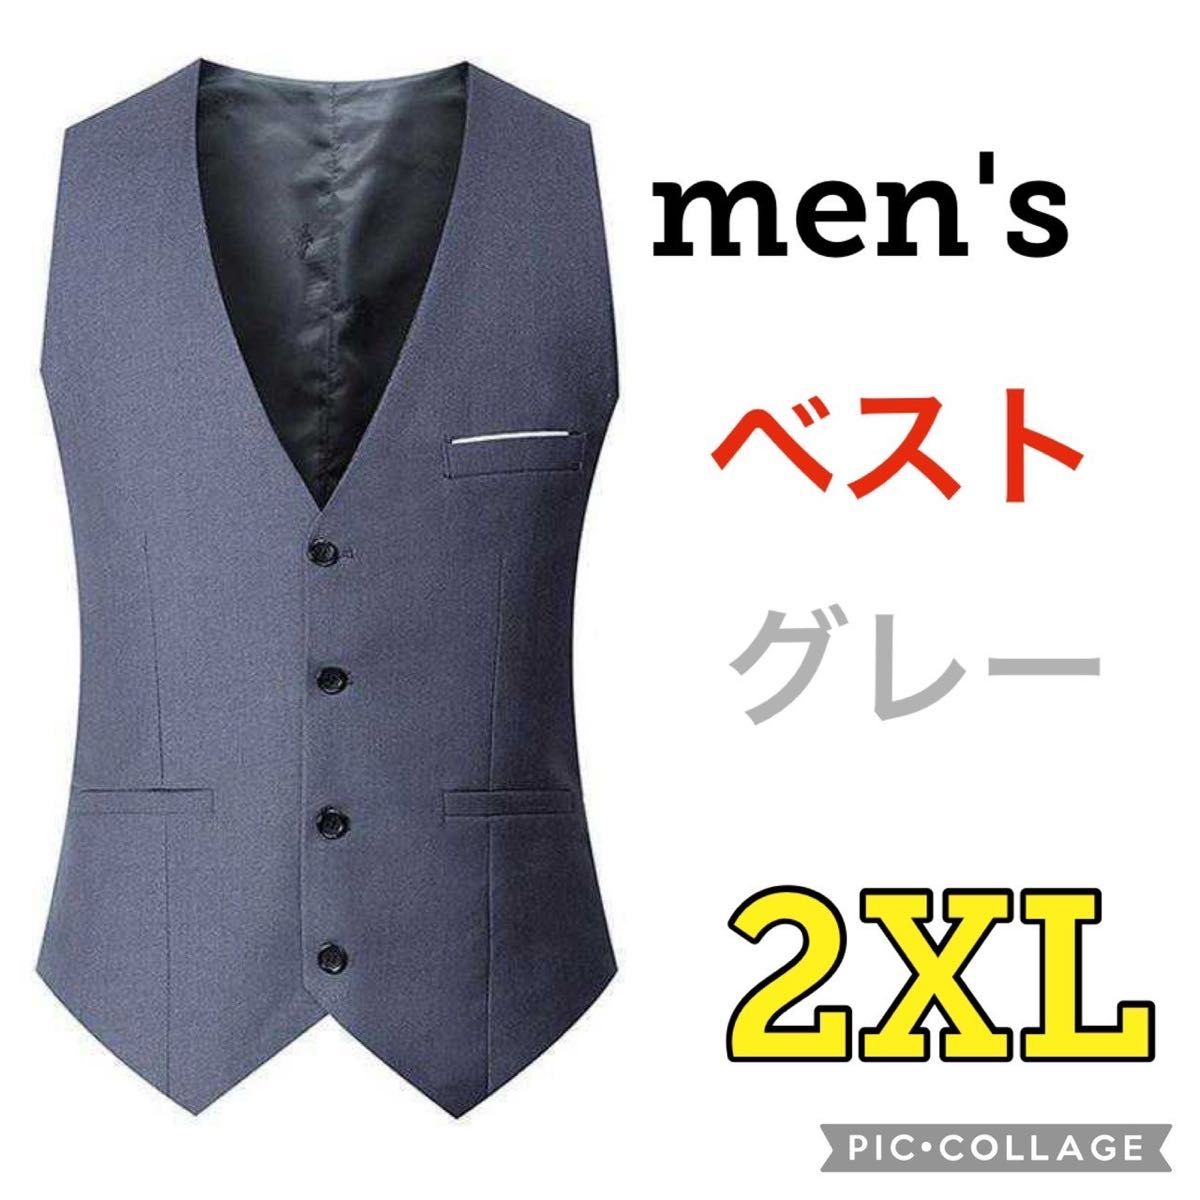 2XL メンズ スーツベスト グレー スーツ ビジネス セレモニー 結婚式 紳士